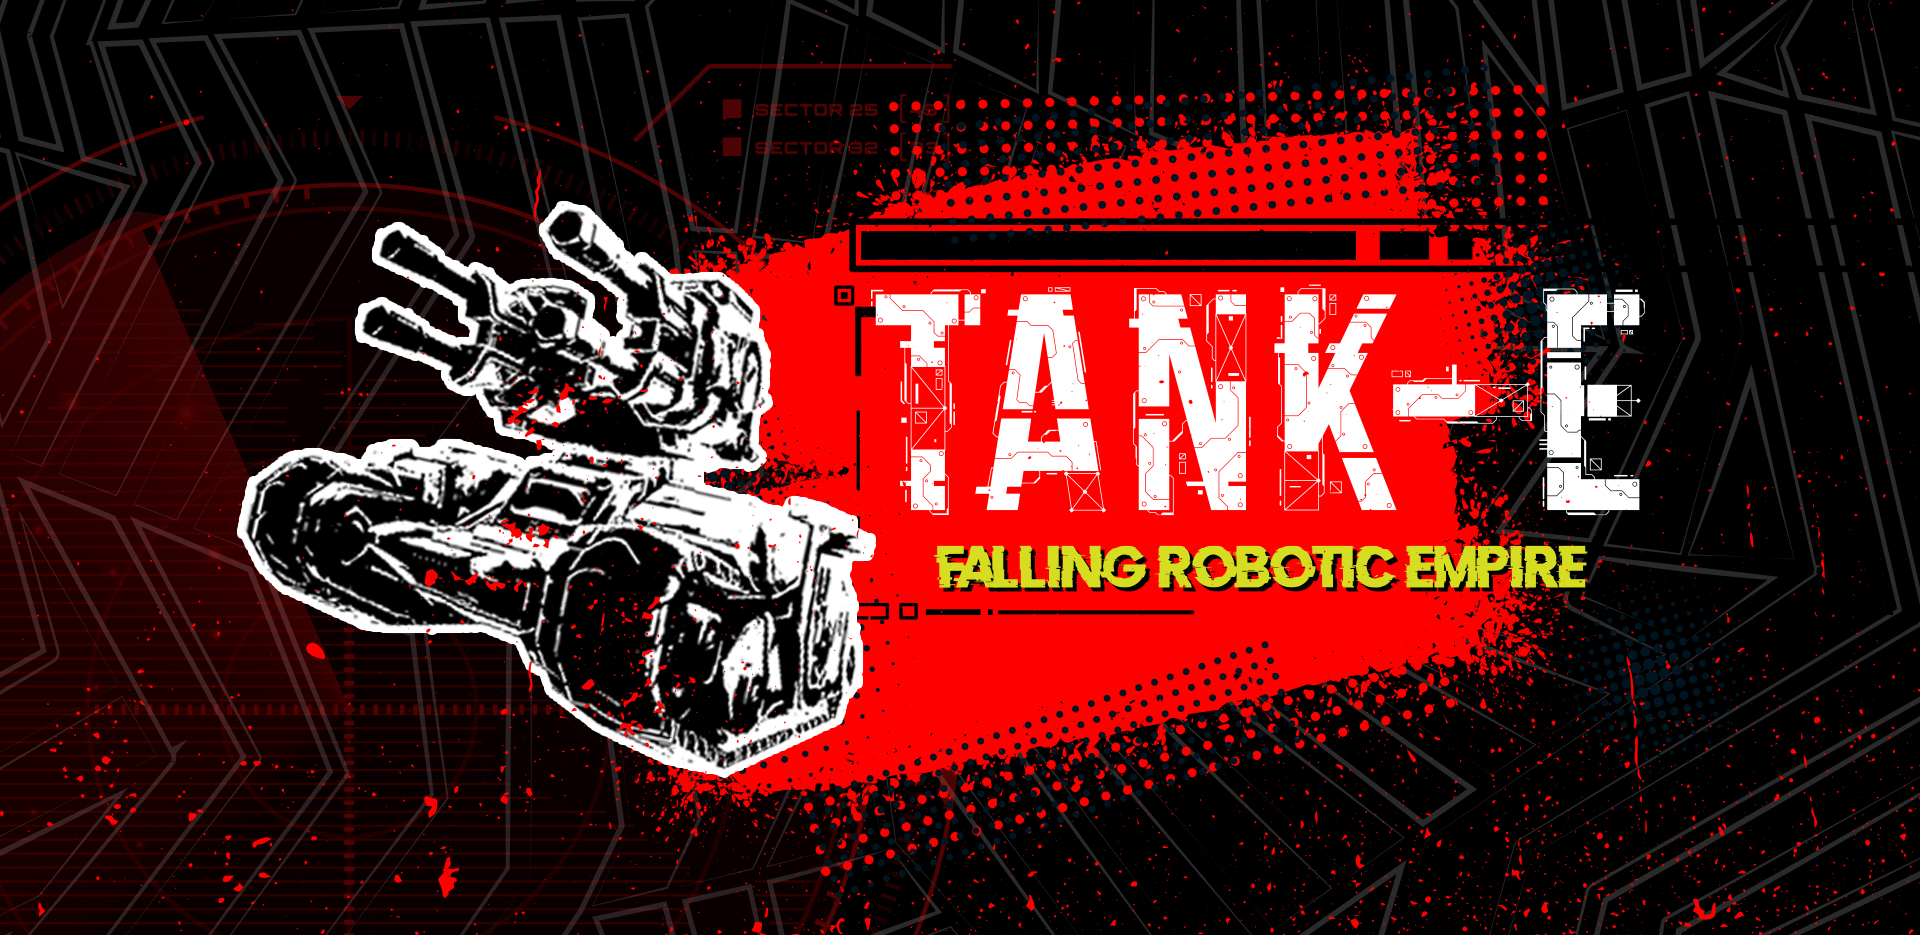 TANK-E Falling Robotic Empires